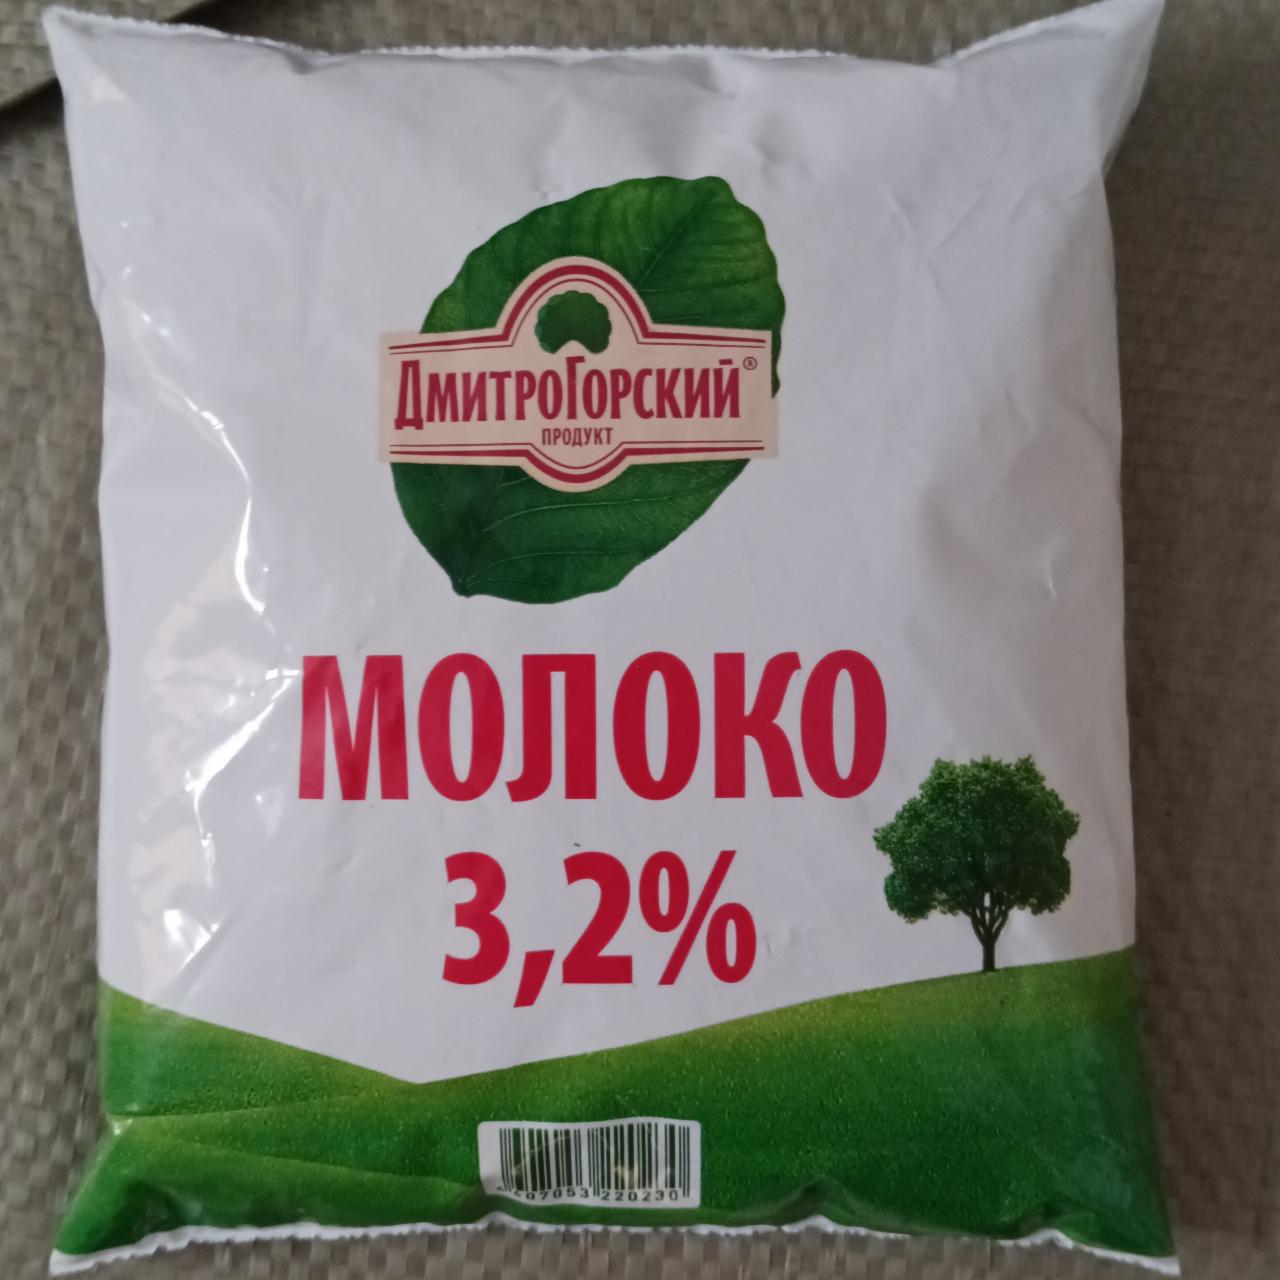 Фото - молоко 3,2% Дмитрогорский Продукт